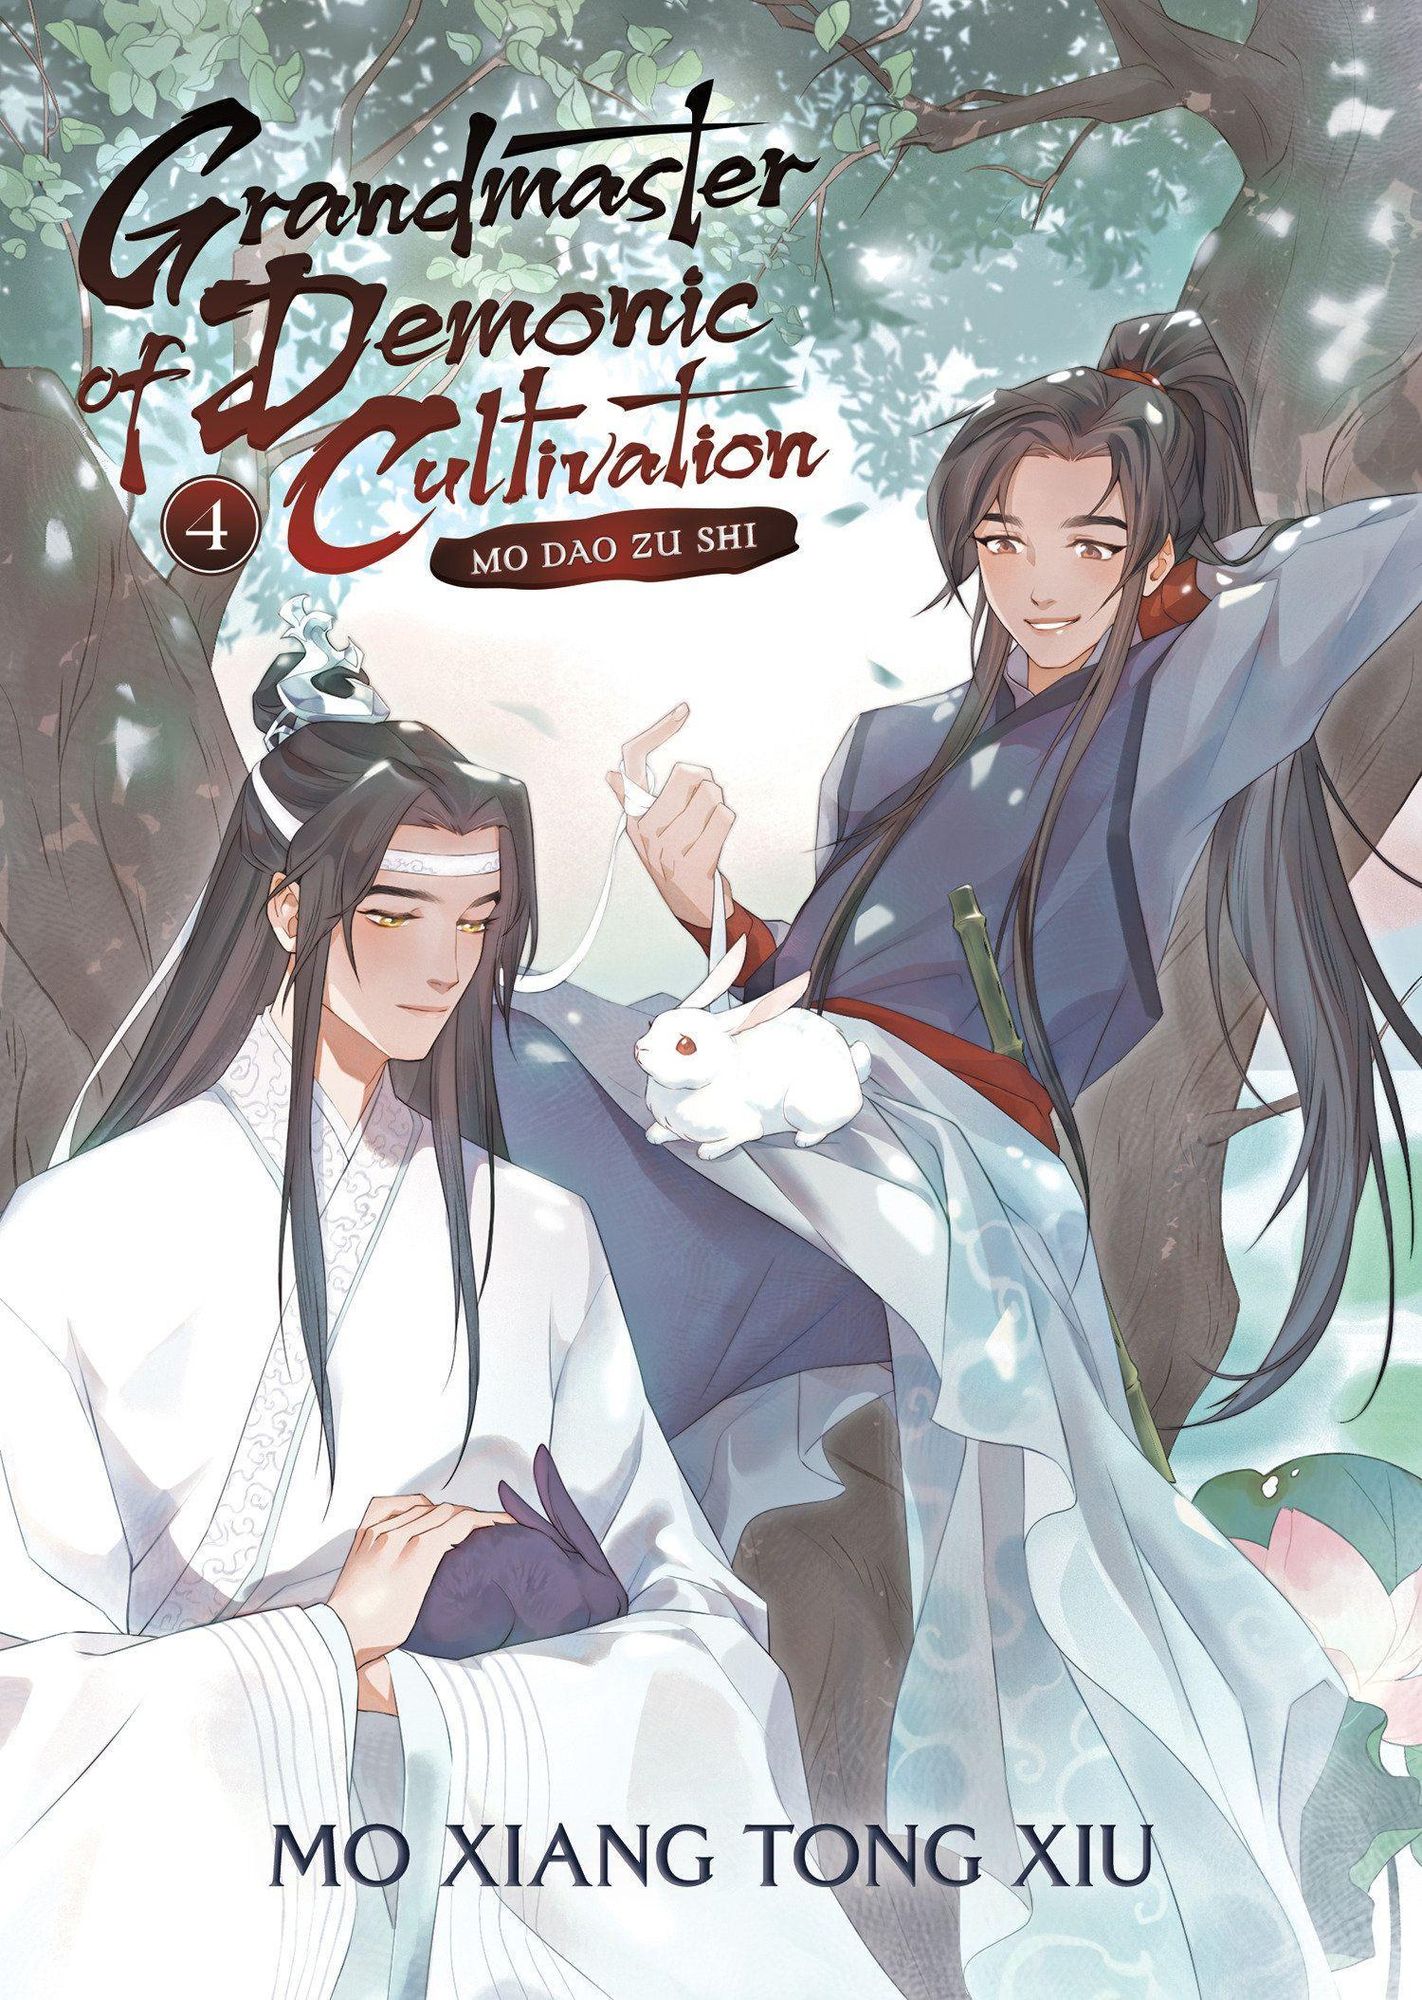 Grandmaster of Demonic Cultivation: Mo Dao Zu Shi (Novel) Vol. 4' von 'Mo  Xiang Tong Xiu' - 'Taschenbuch' - '978-1-63858-301-1